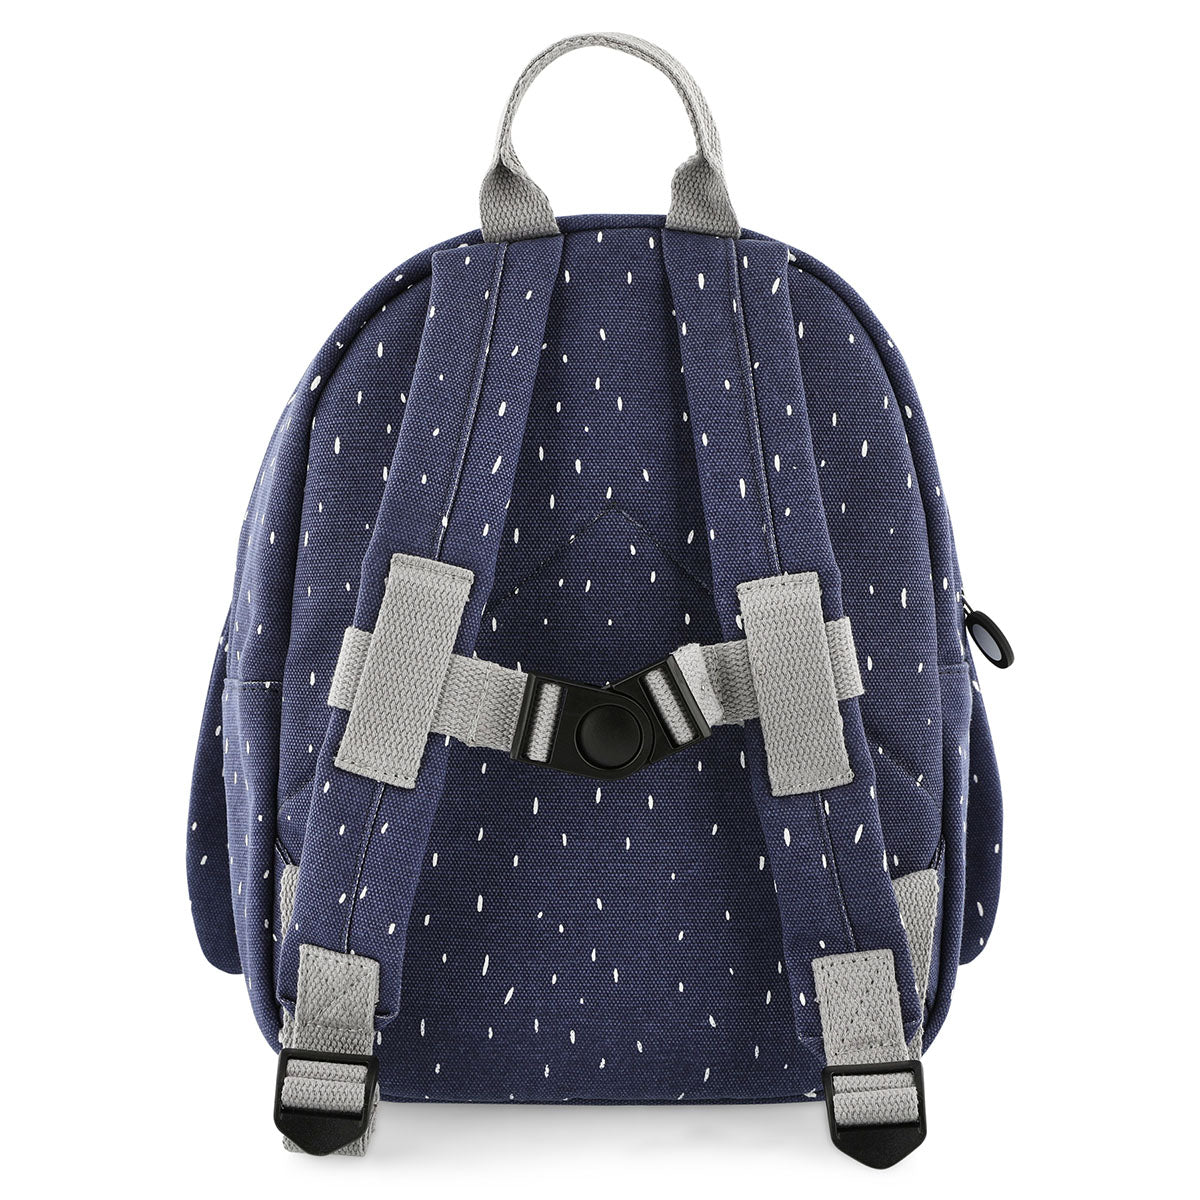 Met de Trixie Mr. Penguin rugzak ben je klaar voor avontuur! In deze blauwe schooltas kan je al je spullen kwijt voor een dagje weg. De blauwe rugzak komt in de vorm van een vrolijke pinguin. VanZus.